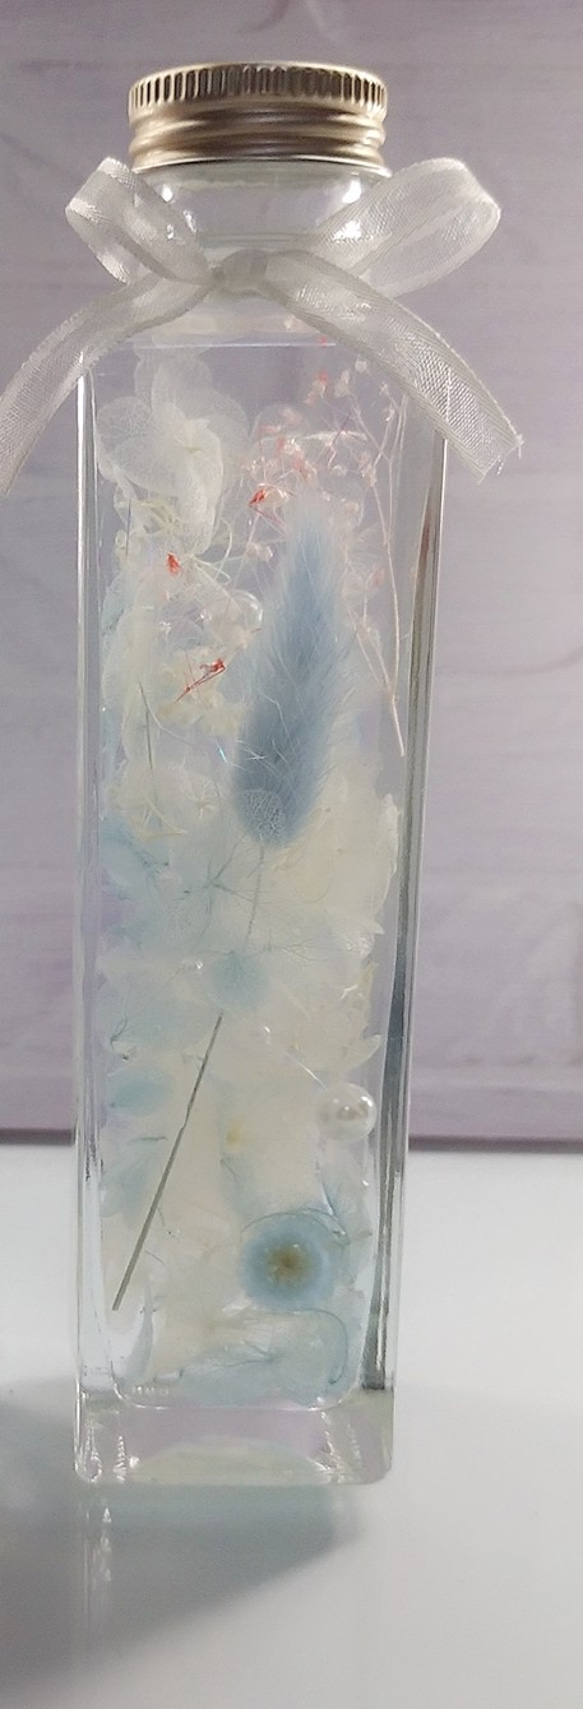 ハーバリウム シンデレラ ホワイト ブルー アクア 水色 あじさい パール ラメ プリザーブドフラワー ドライフラワー 4枚目の画像